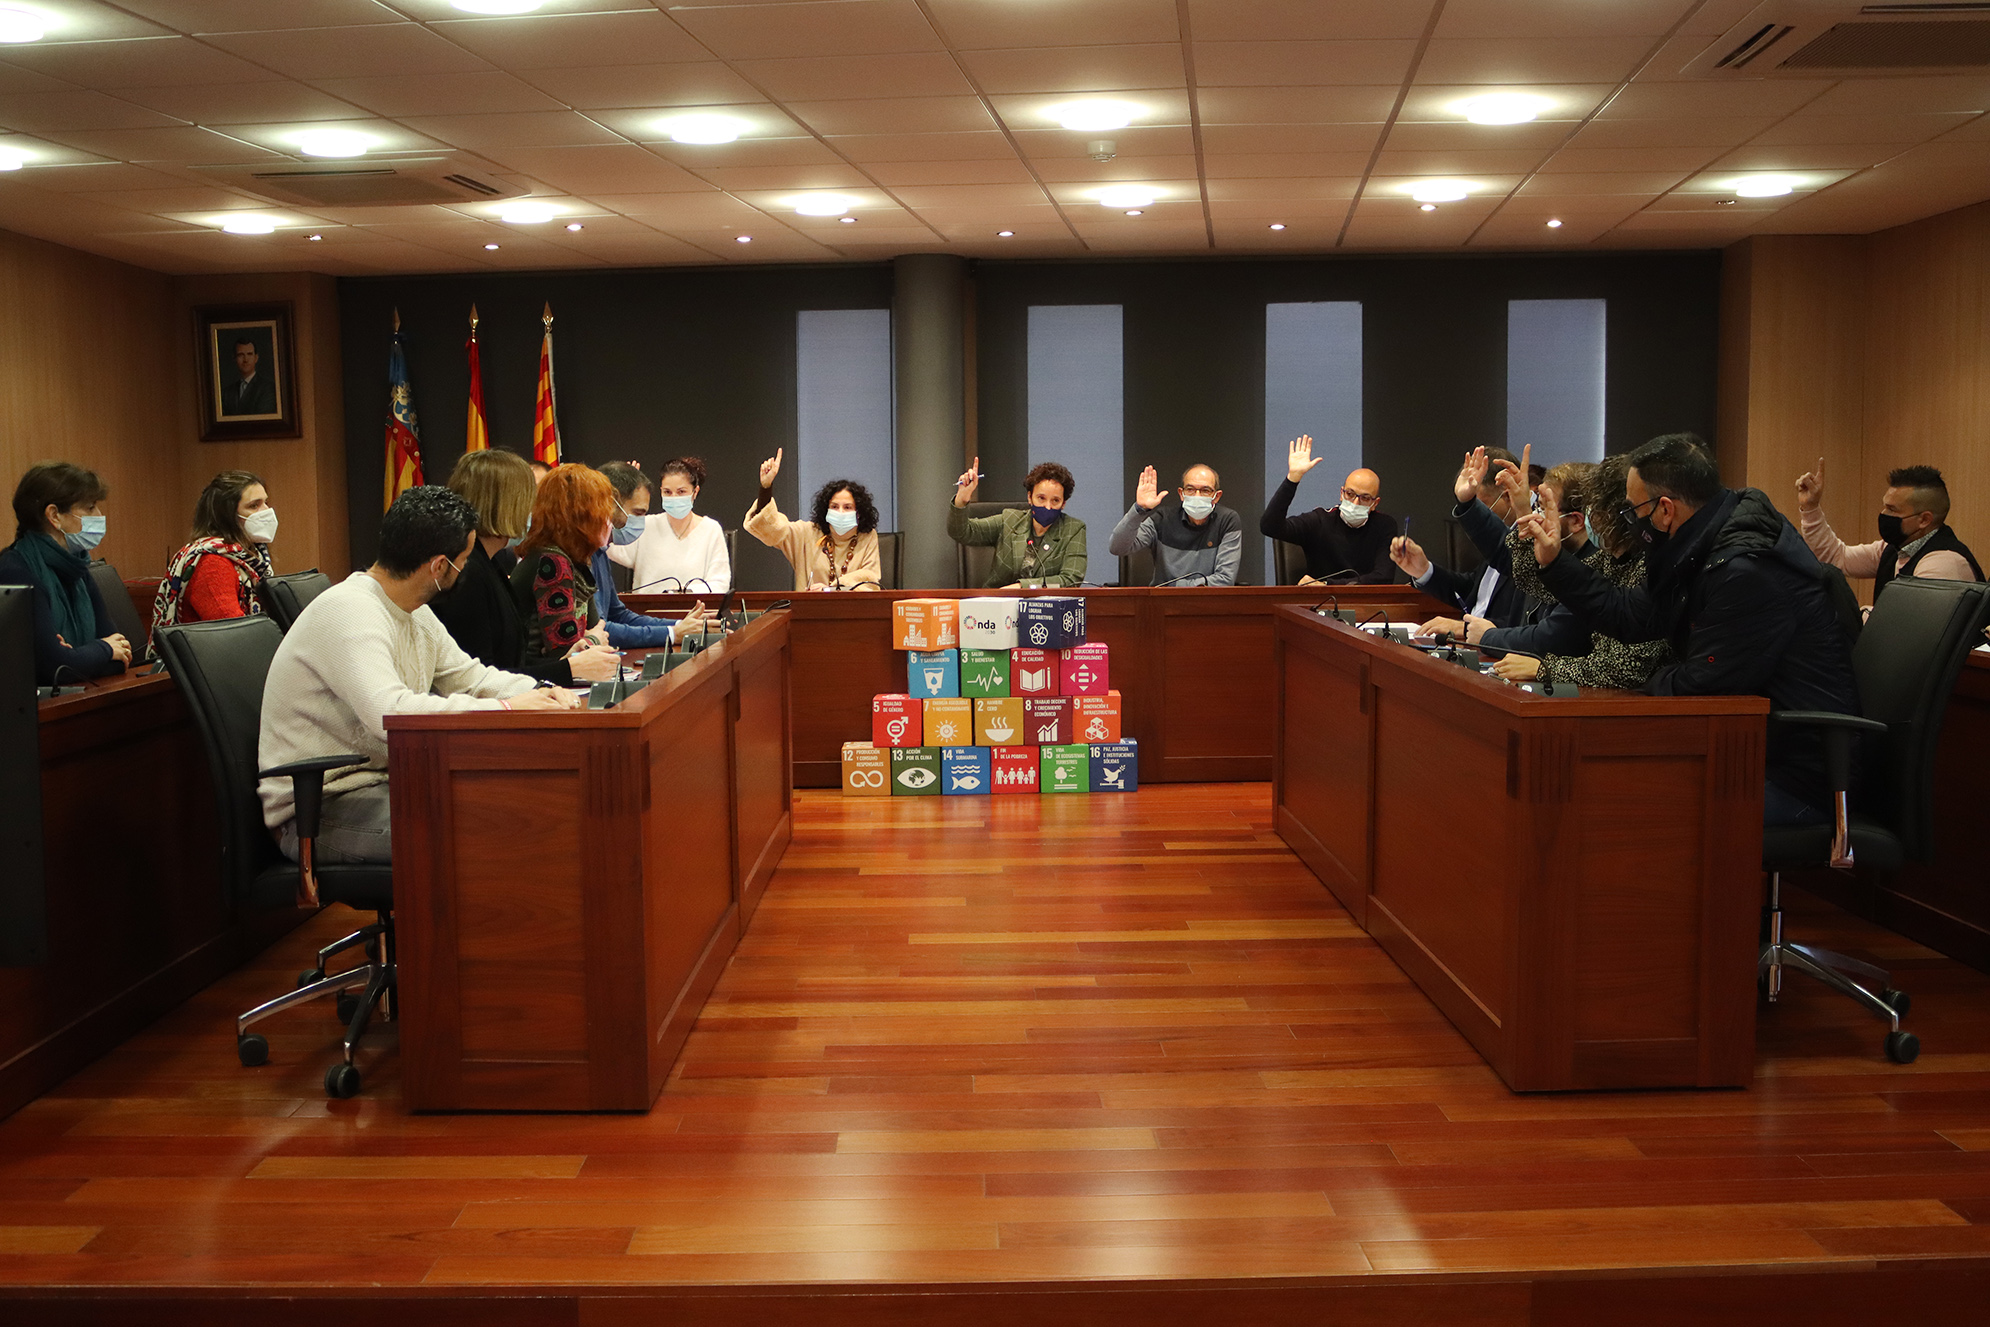 Ballester reestructura el equipo de gobierno de Onda y reduce el gasto político en 63.000 euros anuales